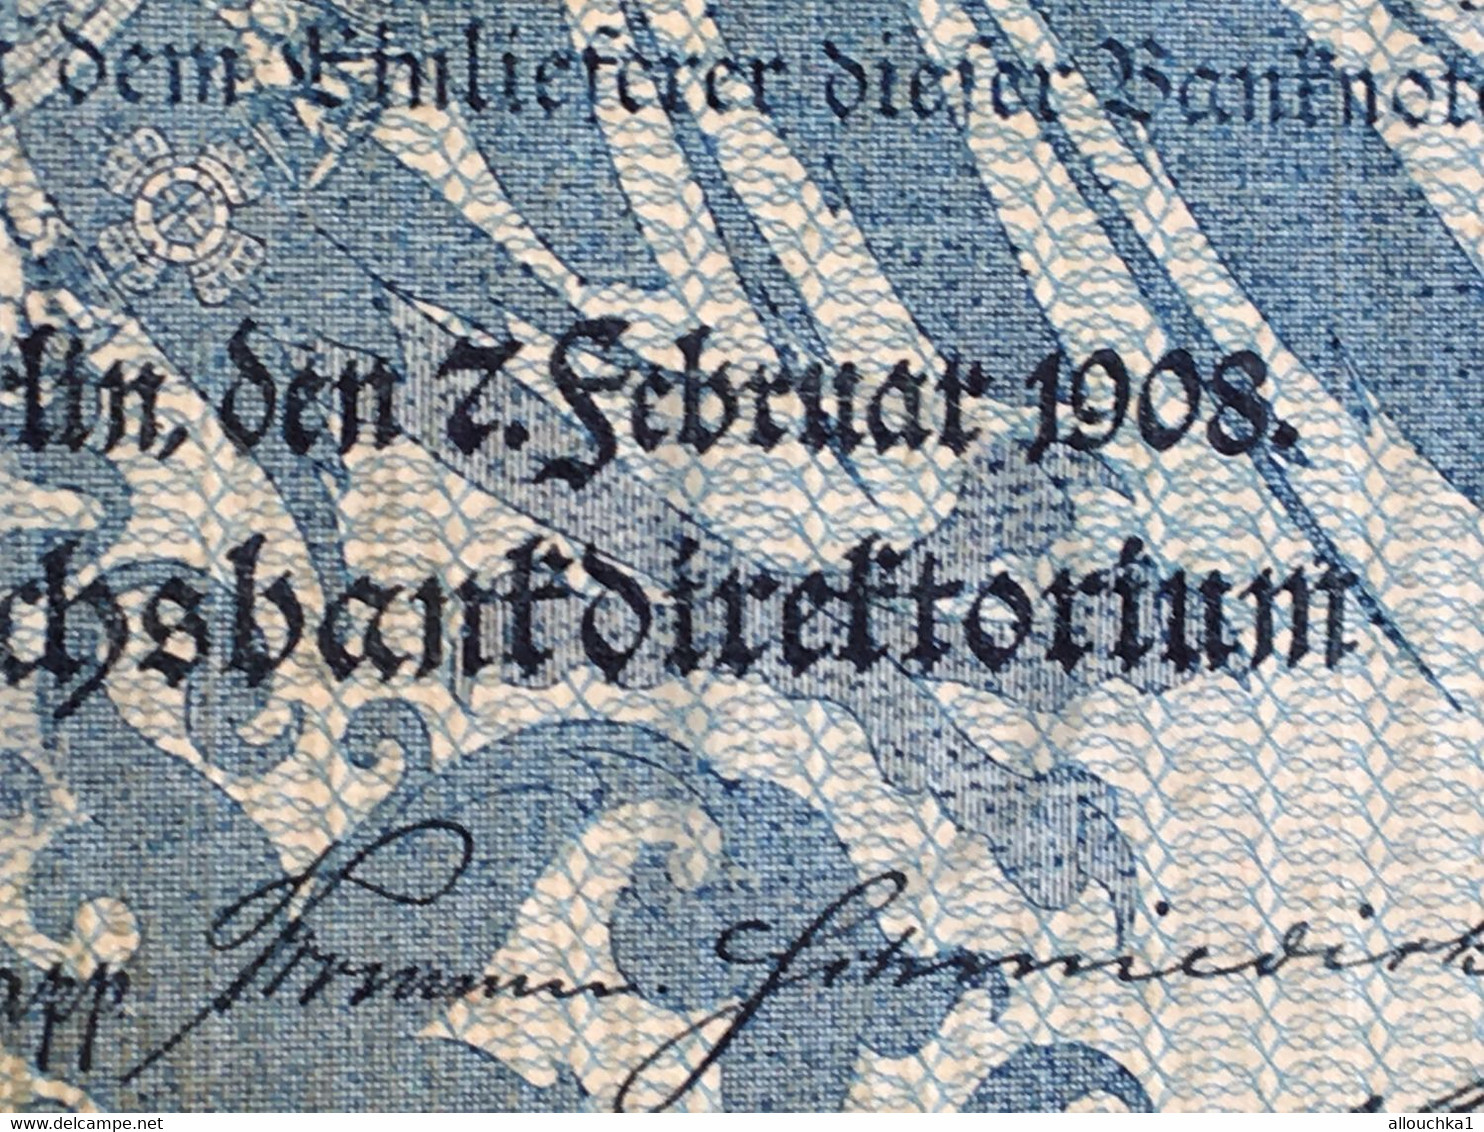 Reichsbanknote 100 Mark 7. Februar 1908 3 Stück Grüne Siegel Erhaltung Guter Zustand Rot -Billet Banque Allemagne-Bank - 100 Mark